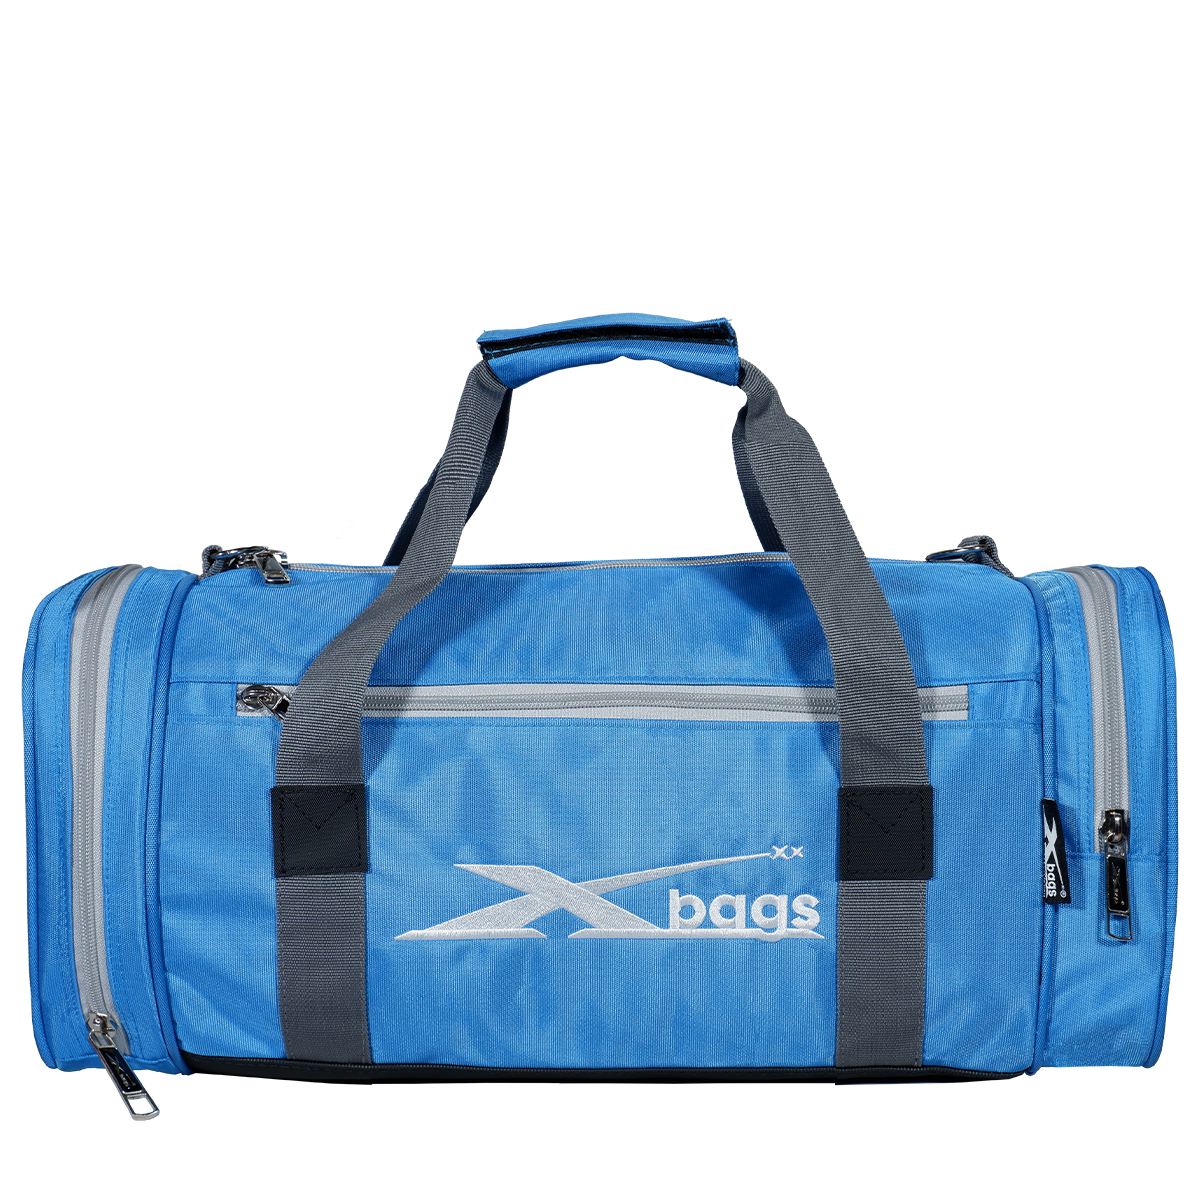 Túi du lịch có ngăn để giày XBAGS Xb 6003 túi trống thể thao